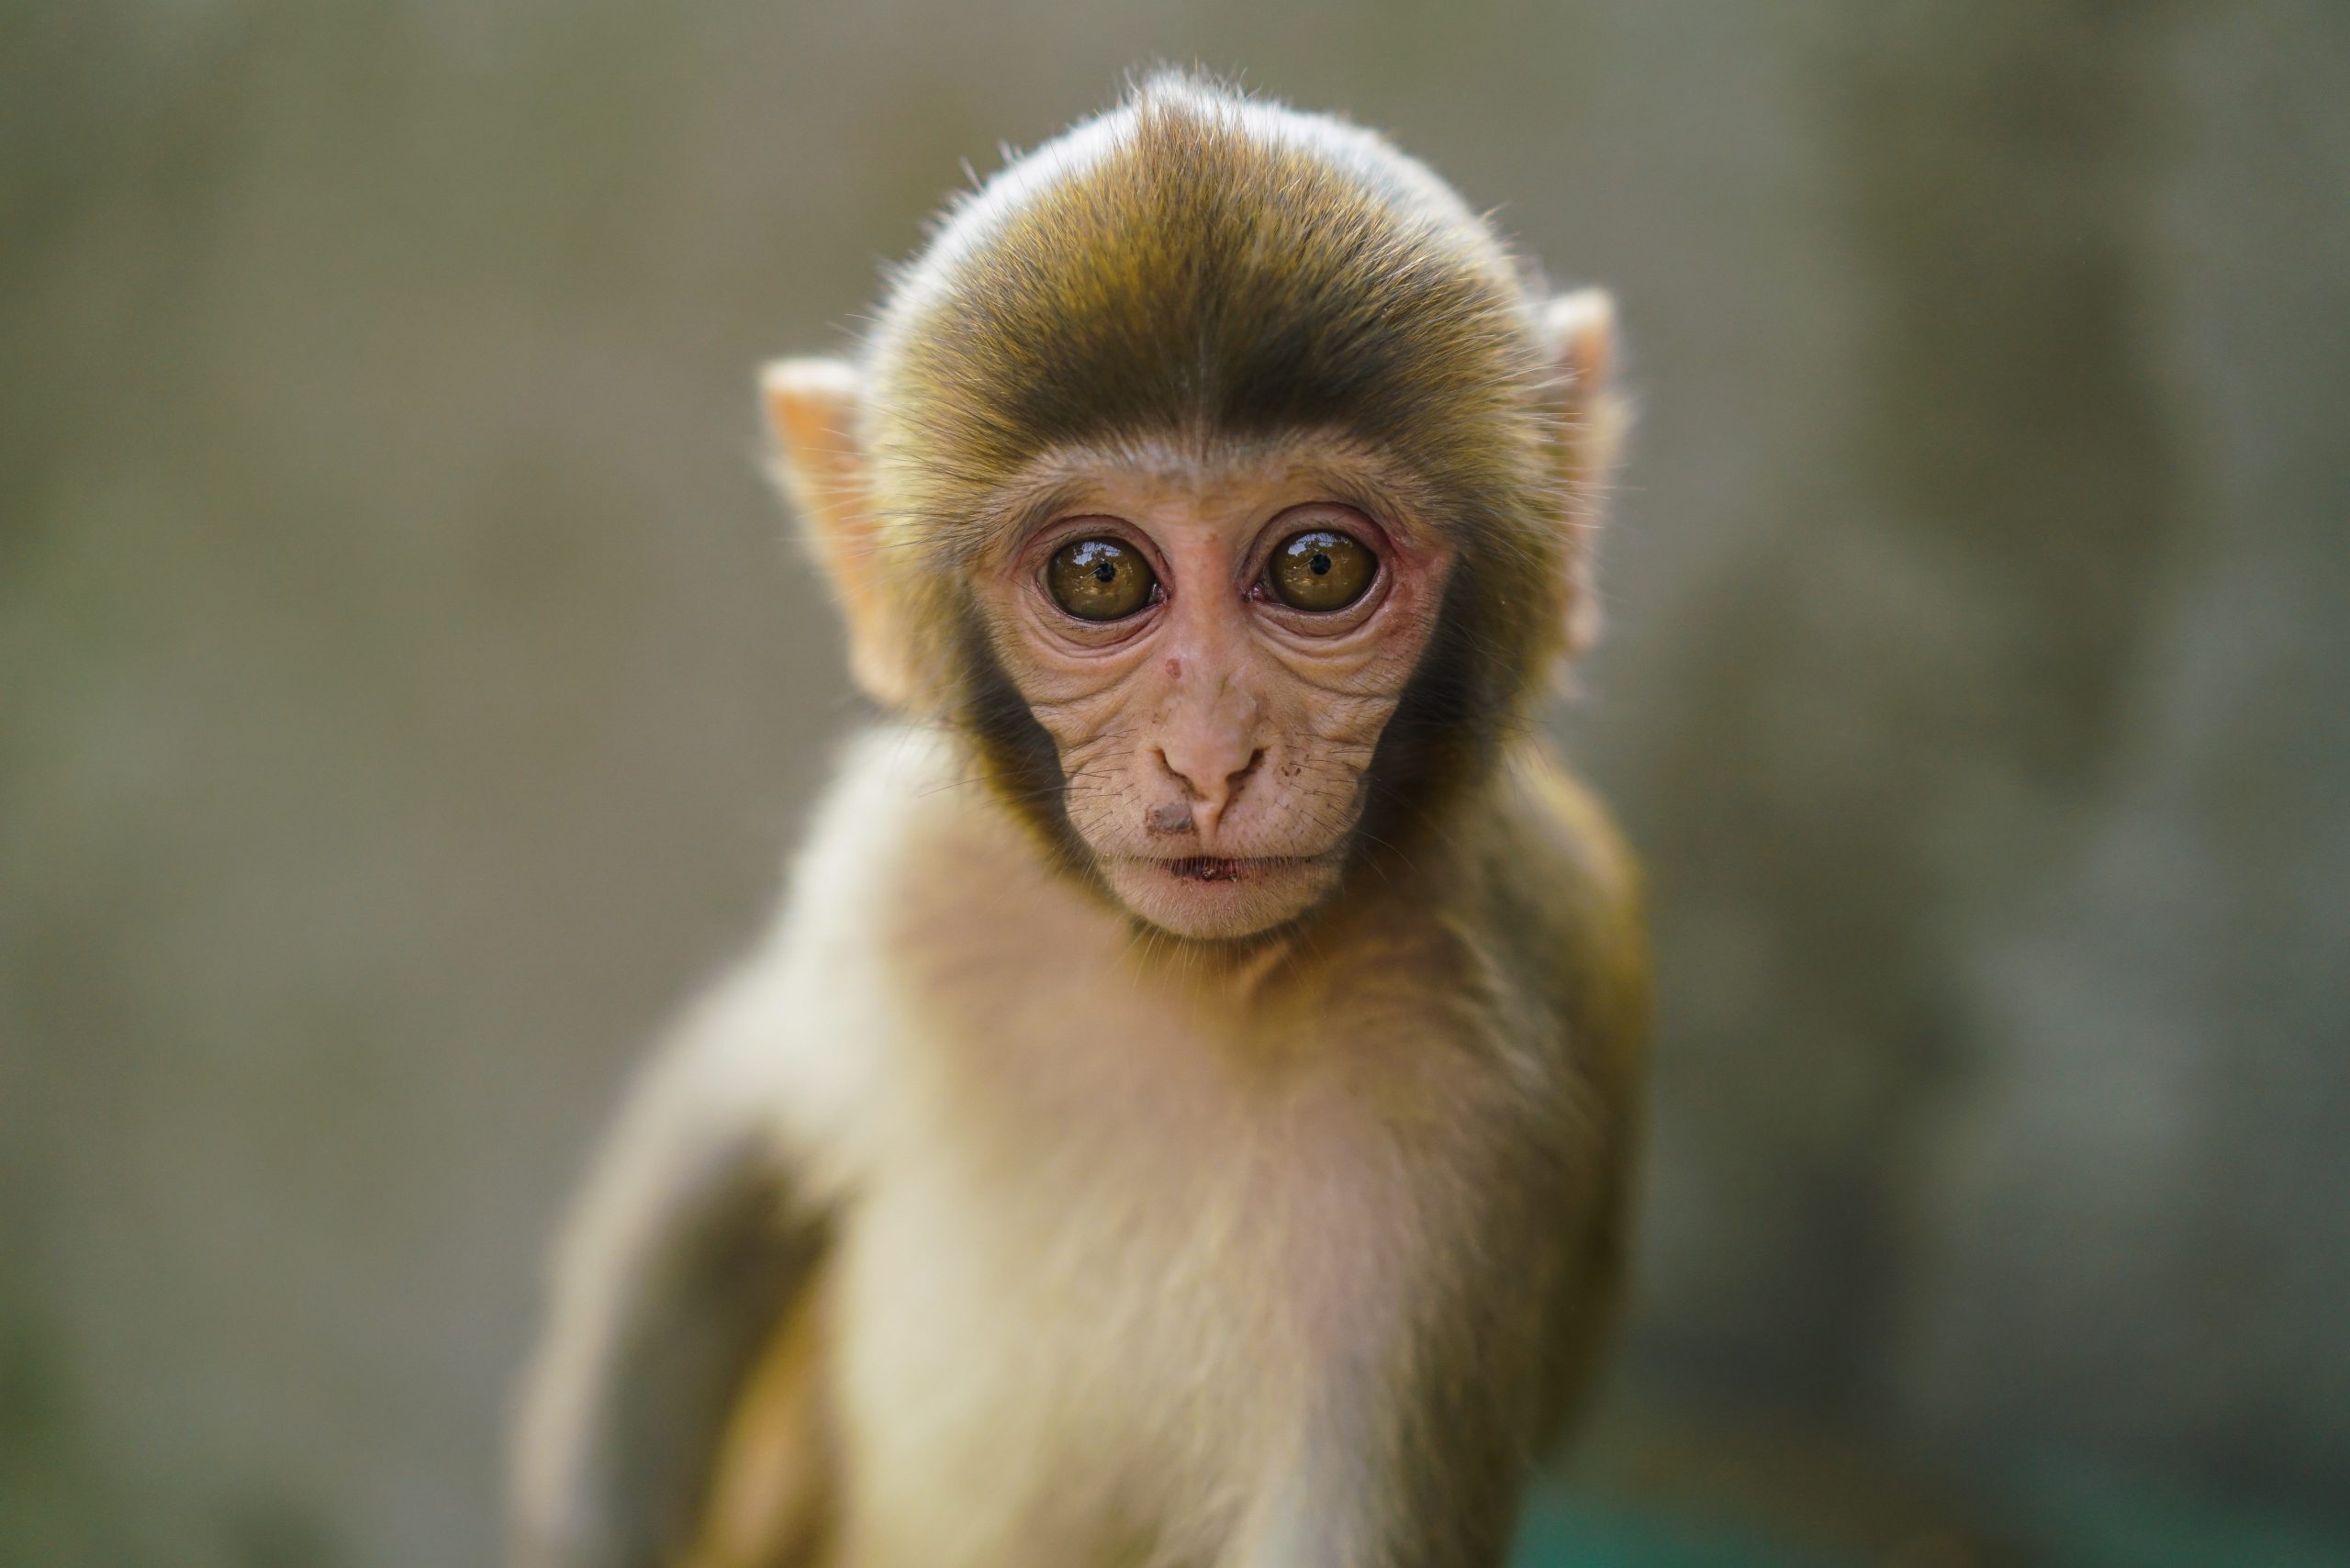 Khỉ con dễ thương là một trong những chủ đề được yêu thích nhất trong dòng ảnh động vật. Hãy cùng ngắm nhìn những khỉ con dễ thương trong những bức ảnh đẹp và sáng tạo.